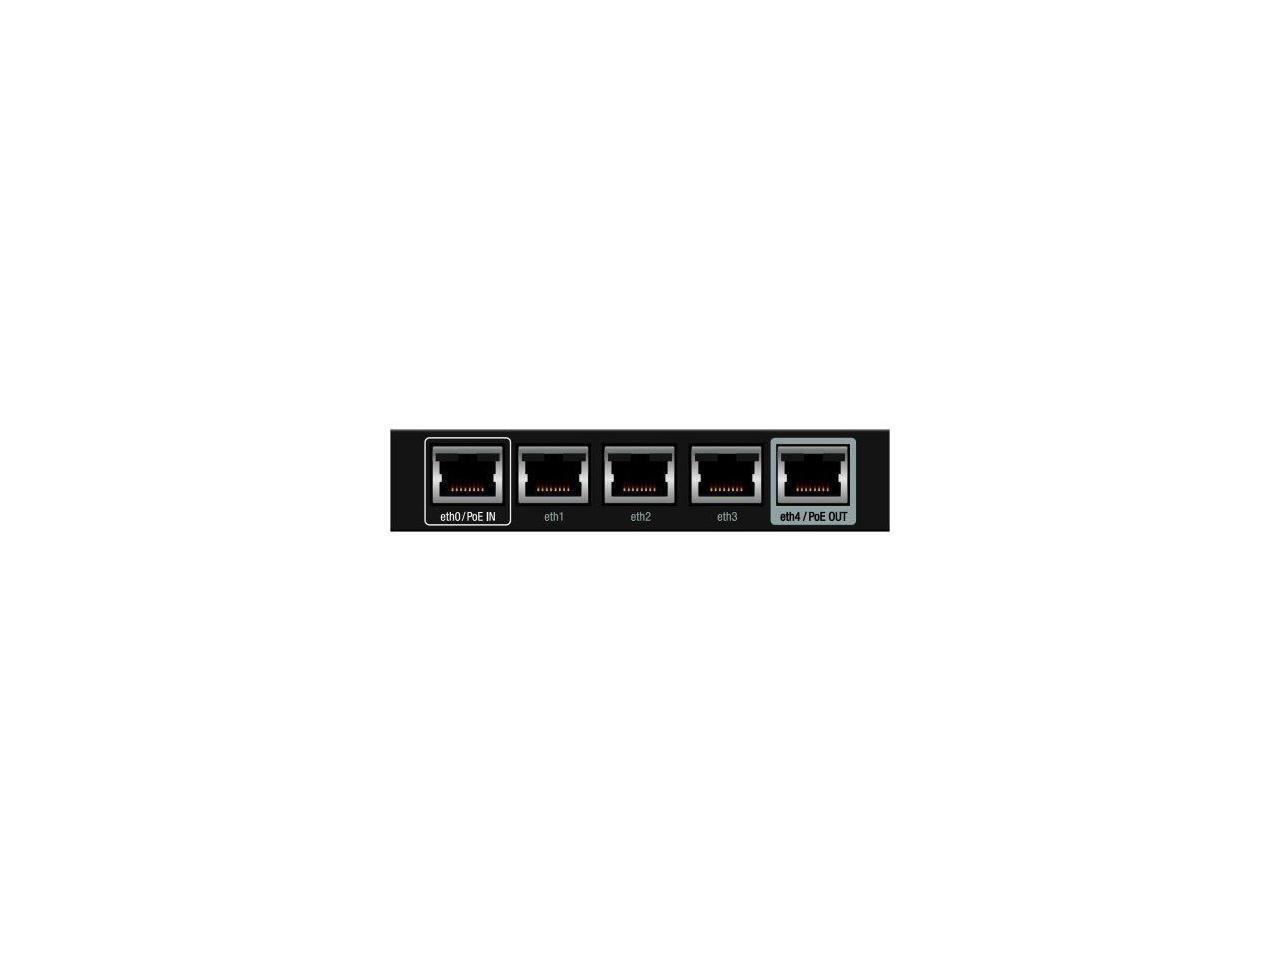 Ubiquiti ER-X-US EdgeRouter X 5-Port Advanced Gigabit Ethernet Routers, 256MB